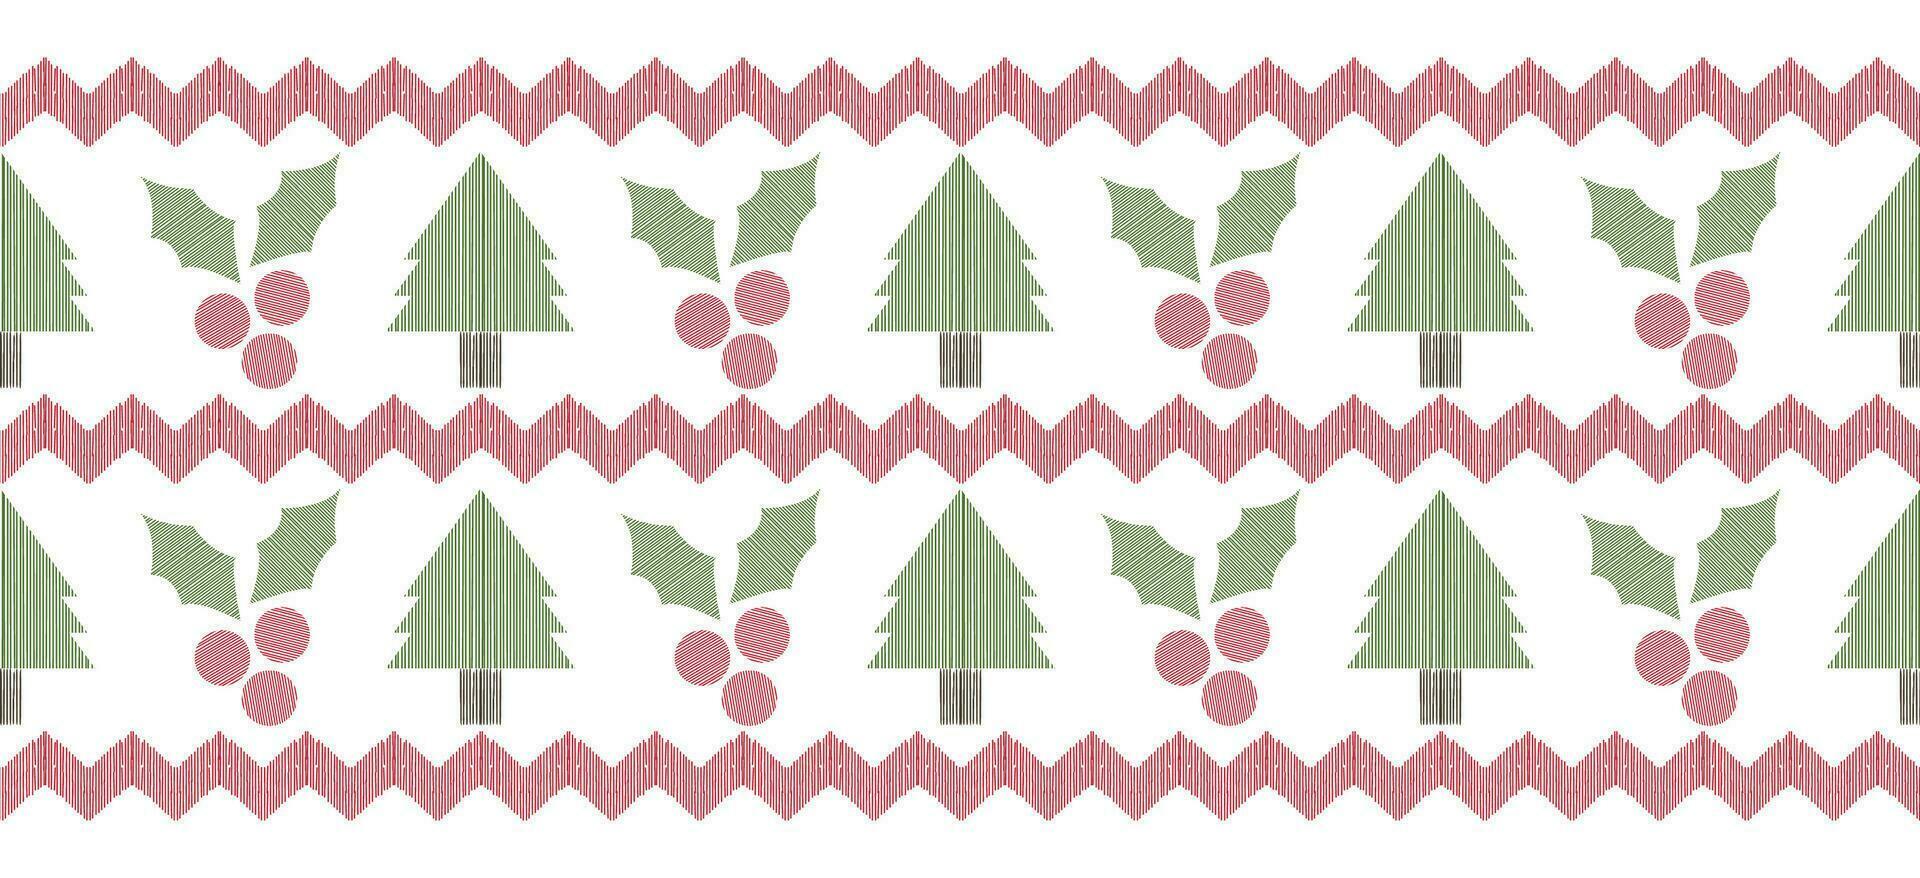 motiv jul träd etnisk handgjort ikat konst. jul bakgrund. folk broderi jul mönster, geometrisk konst prydnad skriva ut. röd, grön, vit färger. snöflinga, stjärna, julstjärna design. vektor